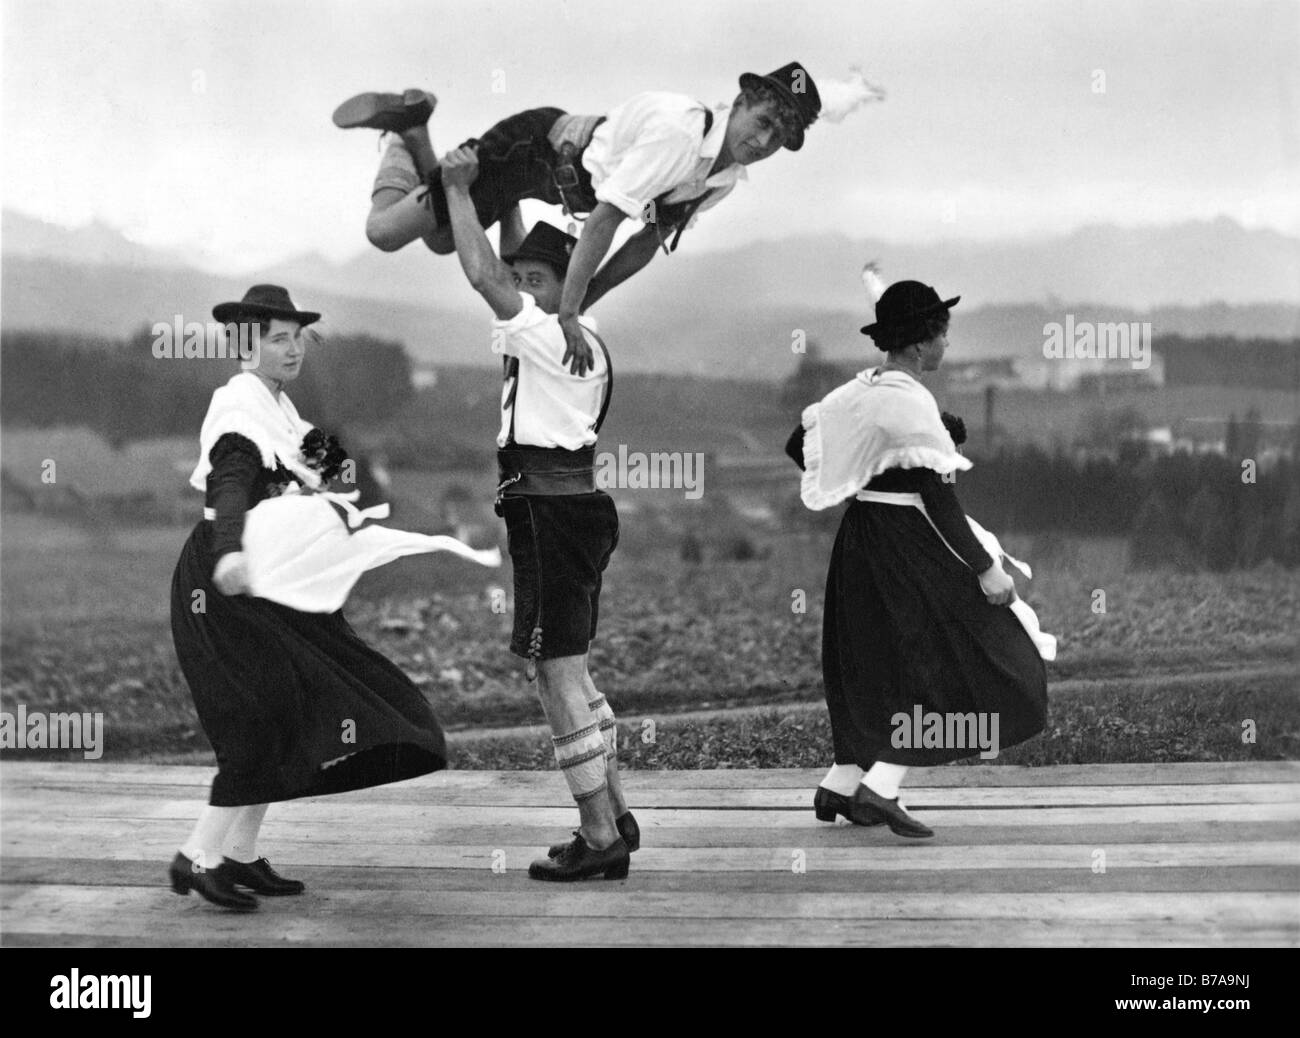 Fotografía Histórica, bávaros bailando, Baviera, Alemania, ca. 1930 Foto de stock